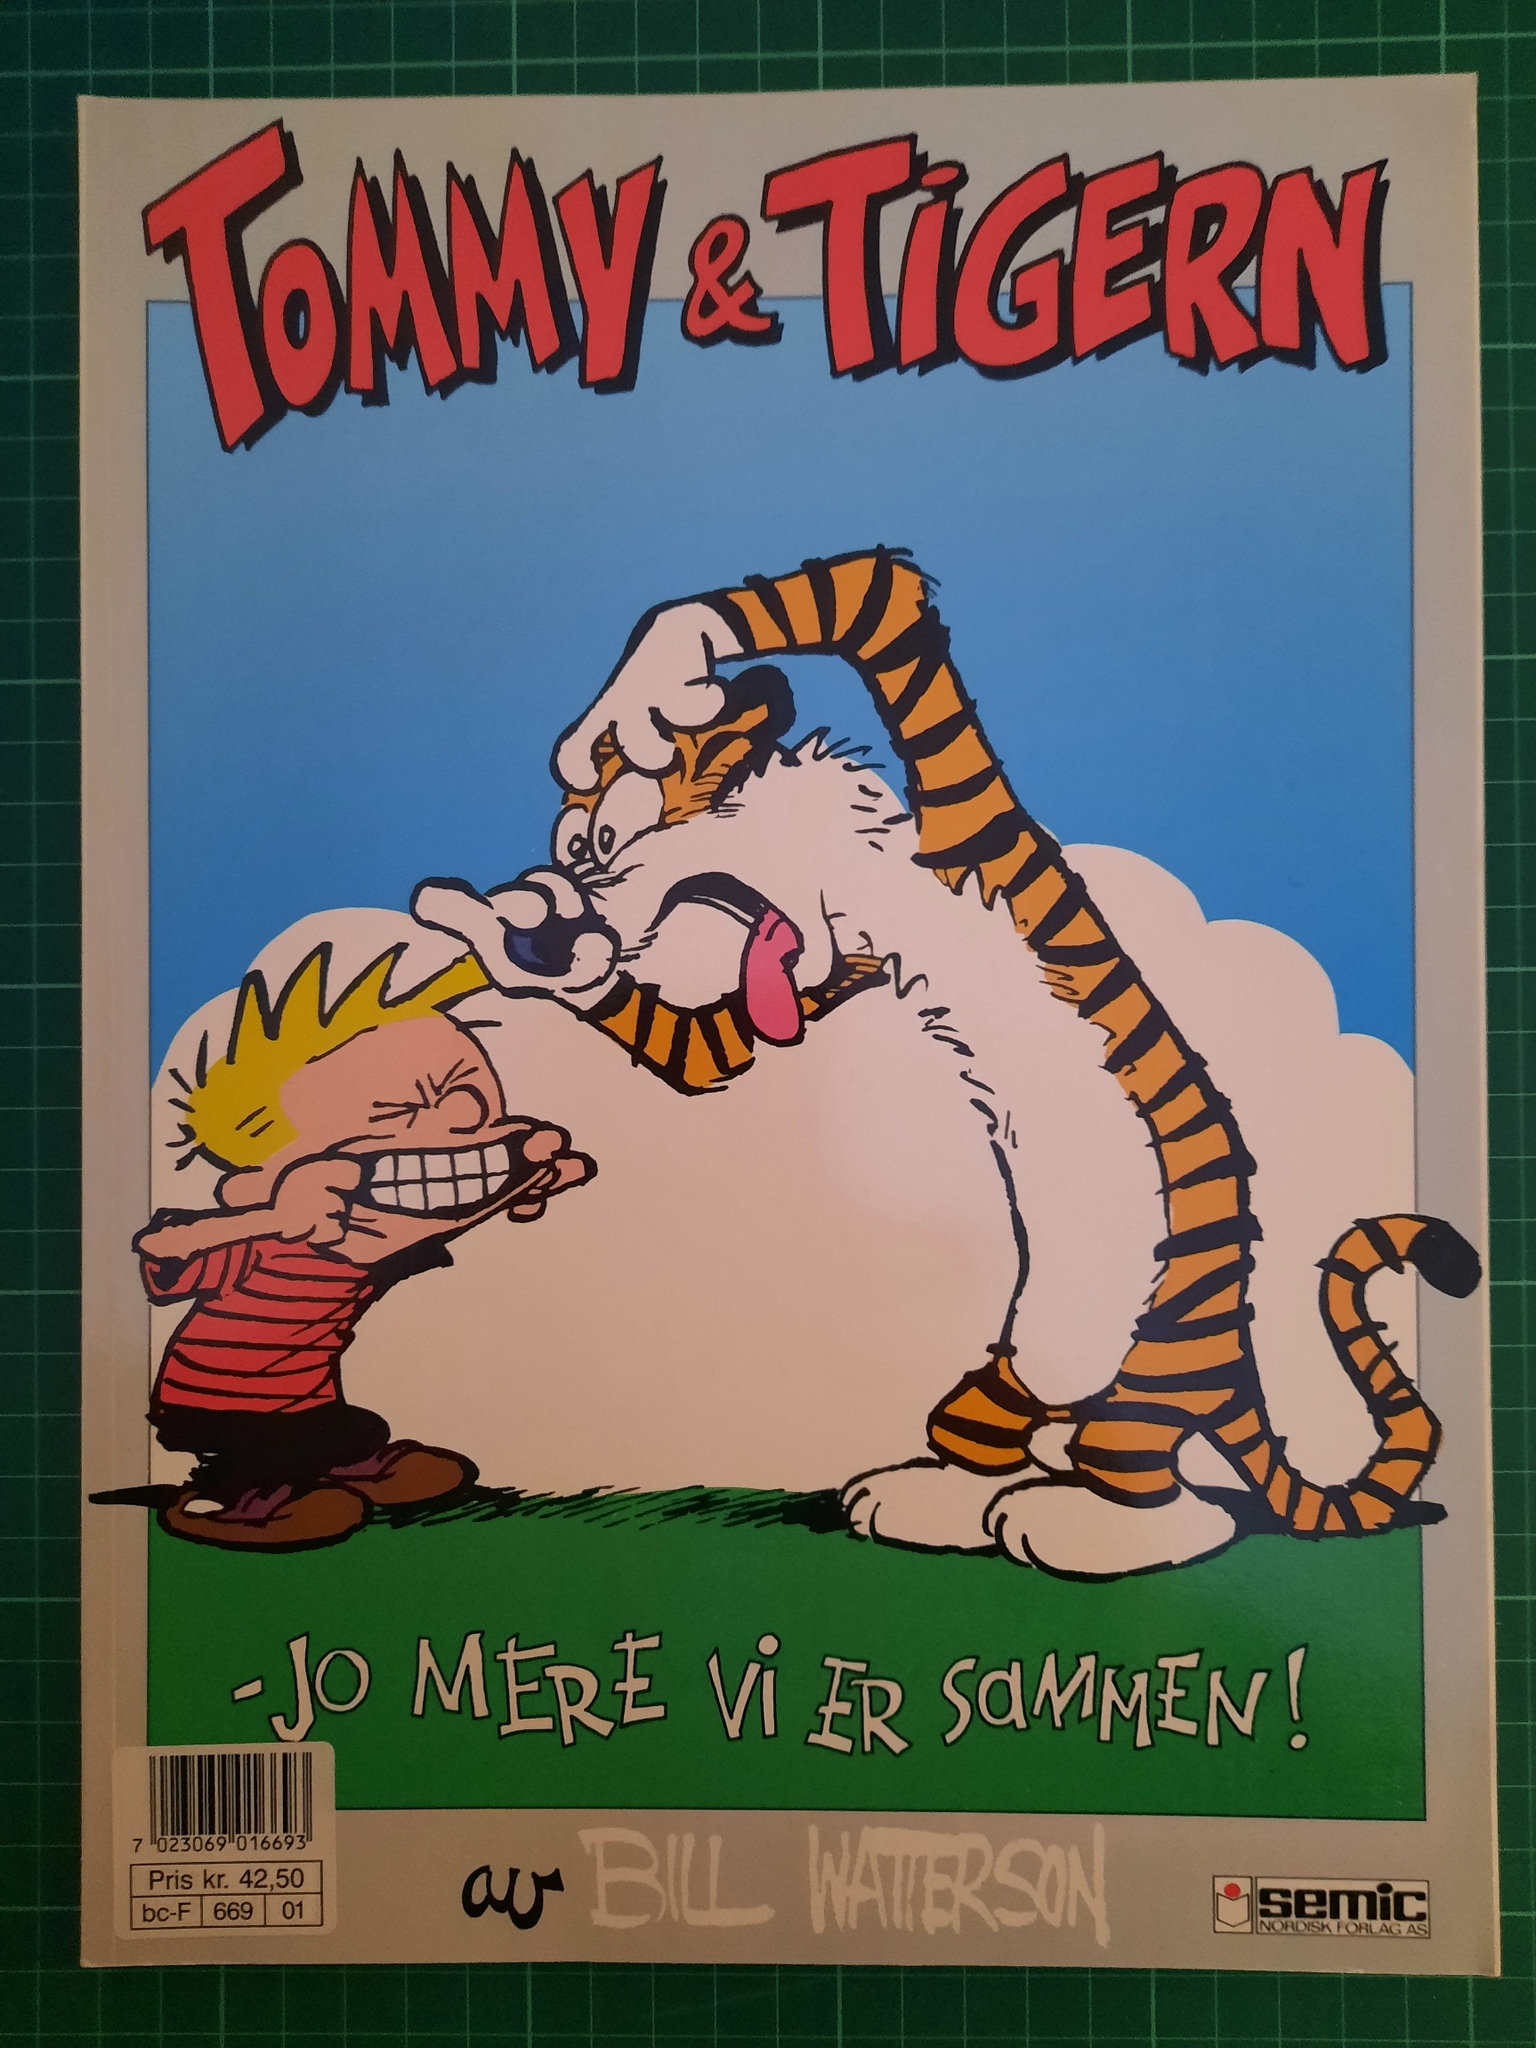 Tommy & Tigern 06 jo mere vi er sammen